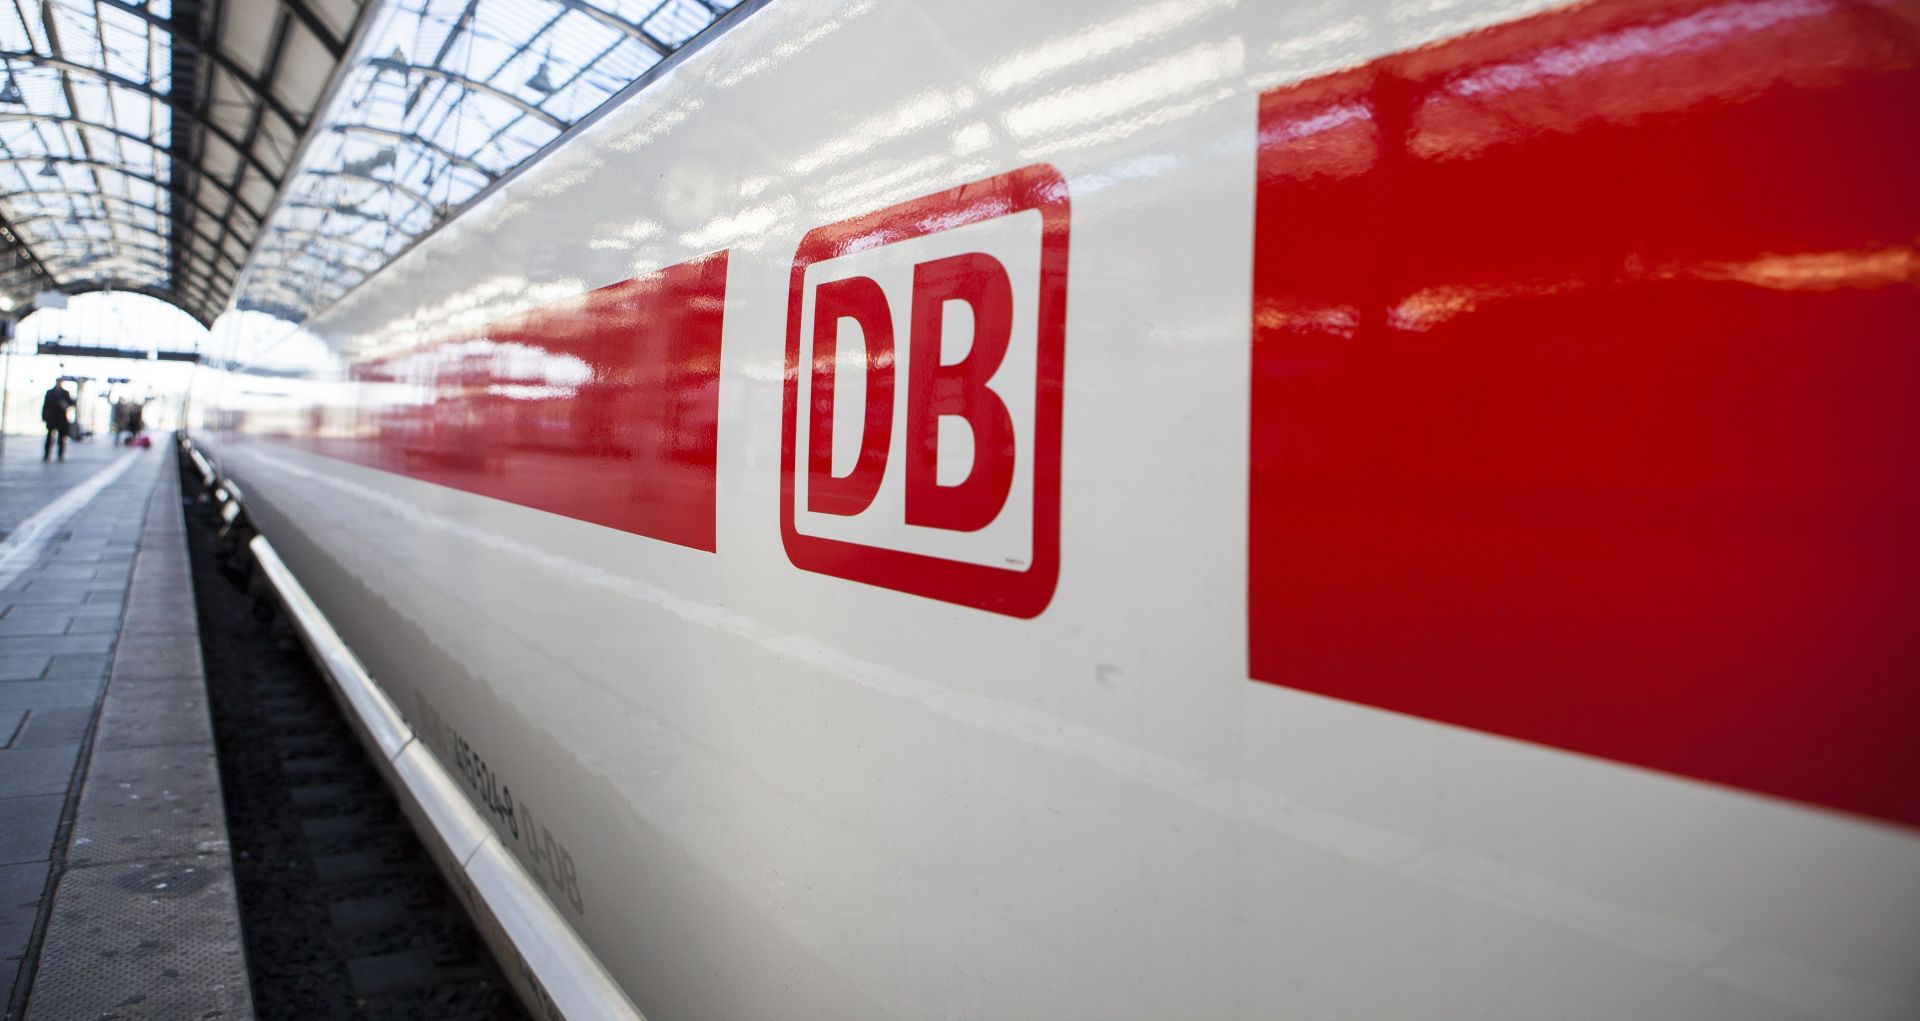 Германският железопътен оператор "Дойче бан" и множество транспортни асоциации в страната започнаха да продават билетите, които ще са валидни за пътуване от юли в рамките на тримесечен период